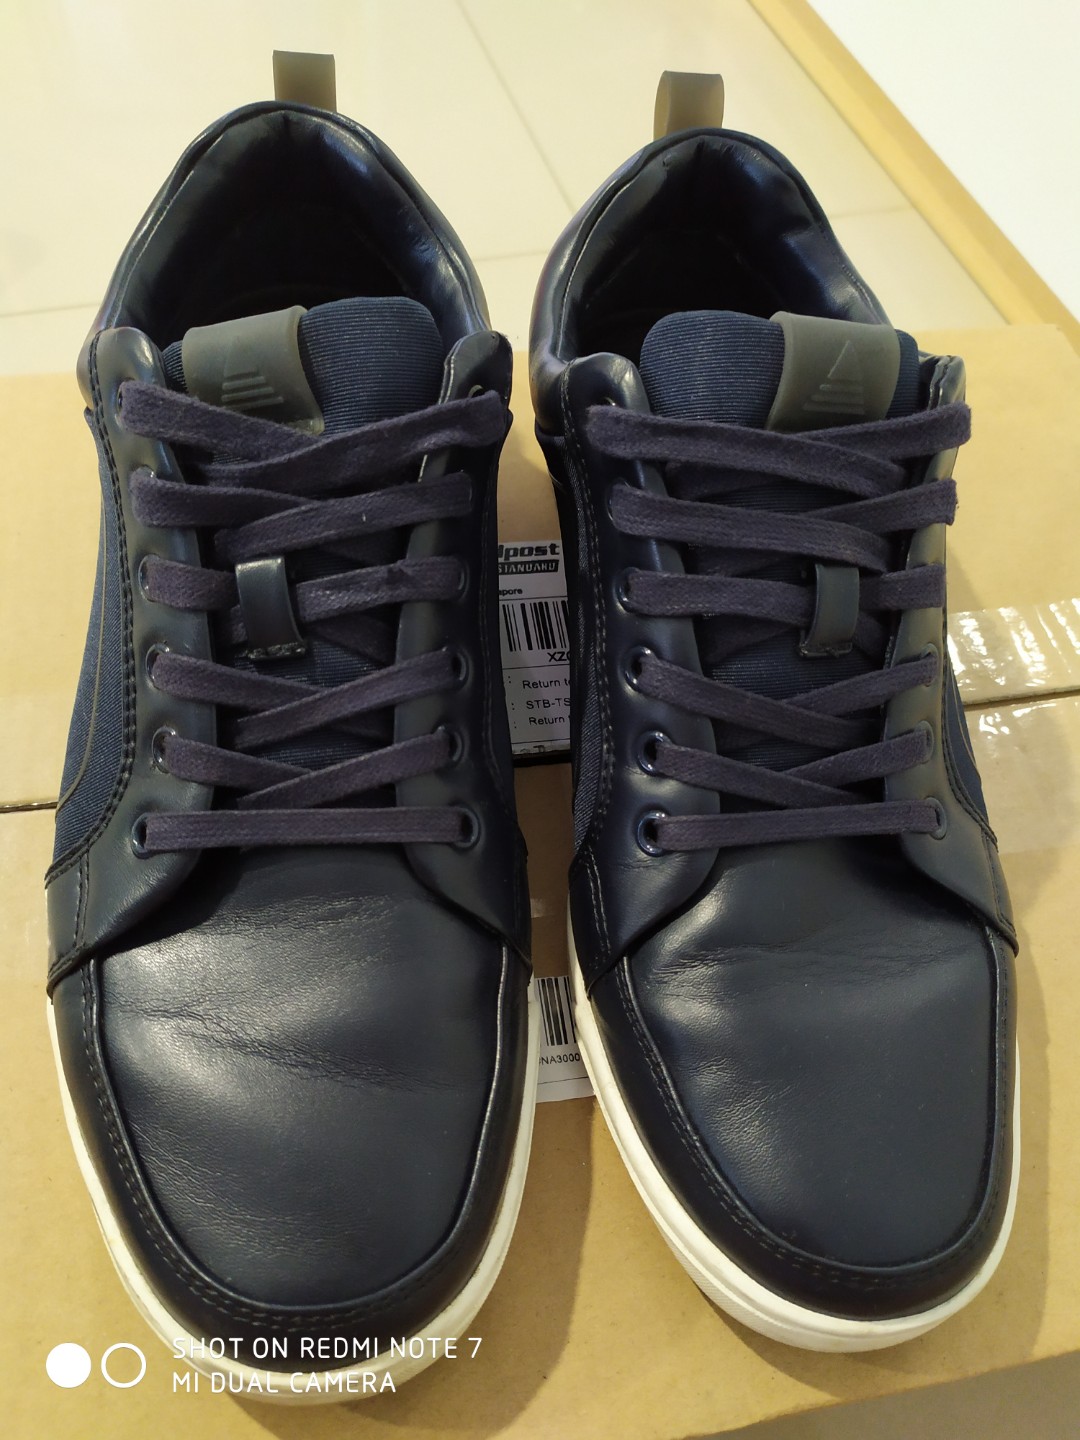 aldo blue sneakers